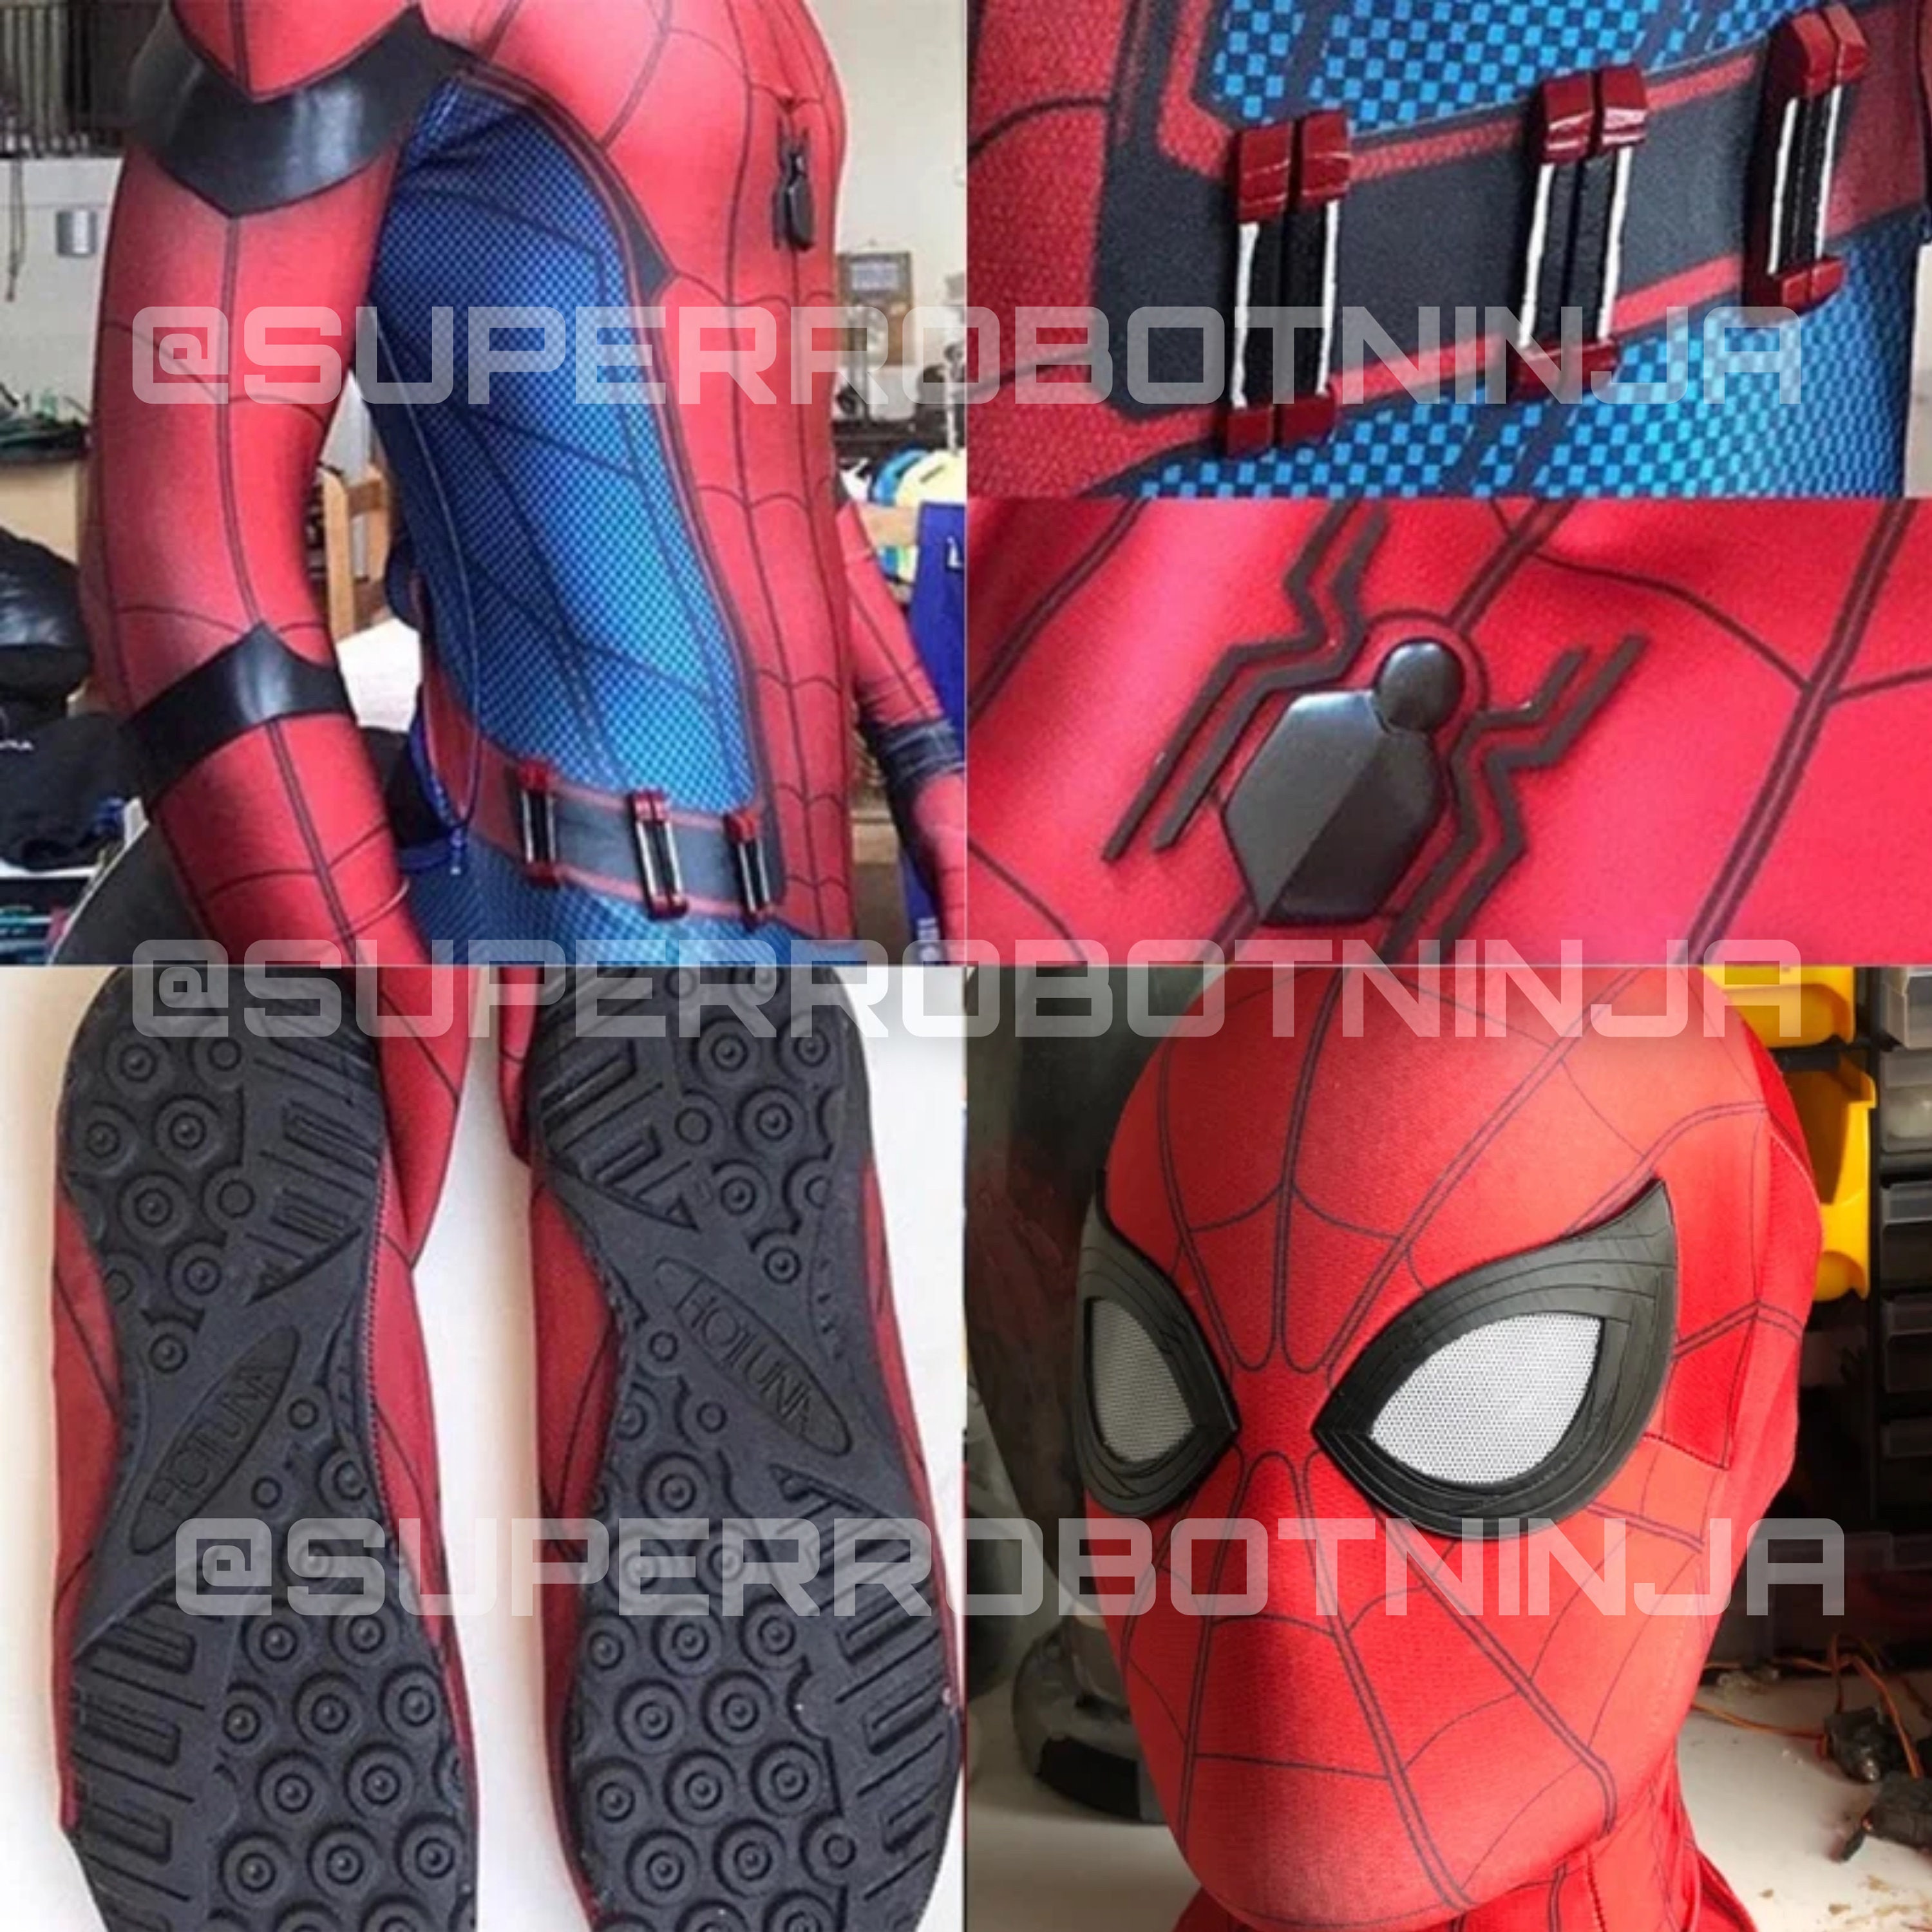 Raimi Spiderman Costume 3D Print Spandex Superhero Cosplay Adult & Kid Suit  HOT